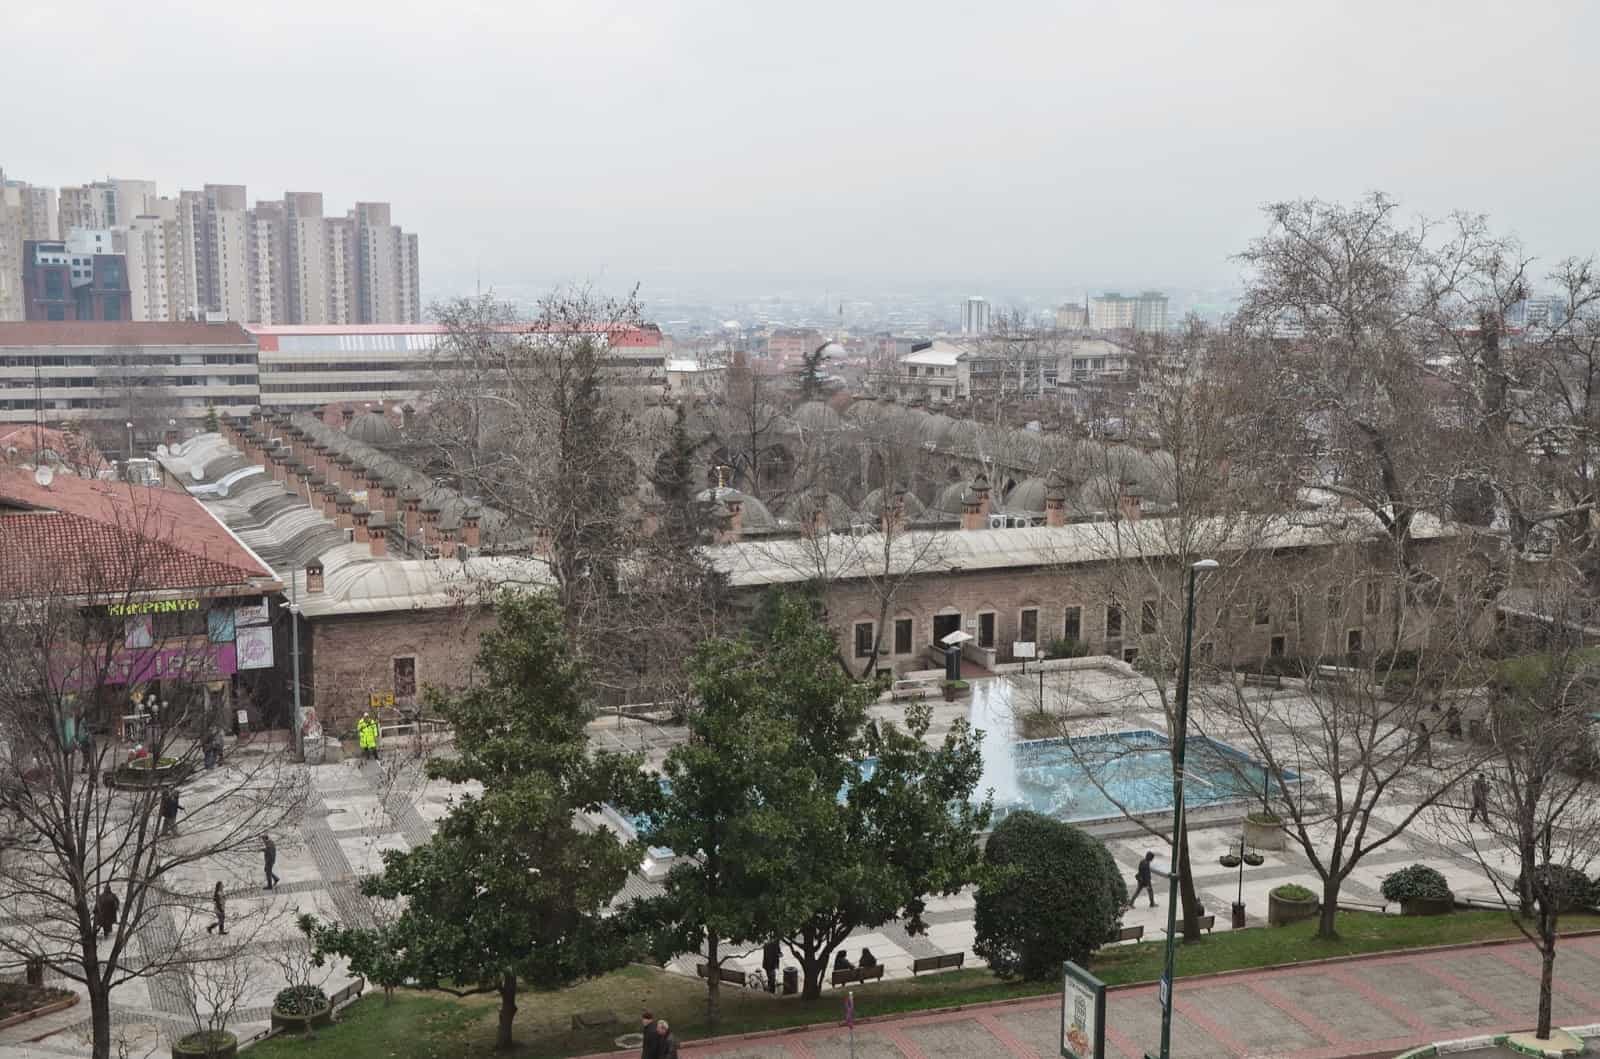 Koza Han in Bursa, Turkey